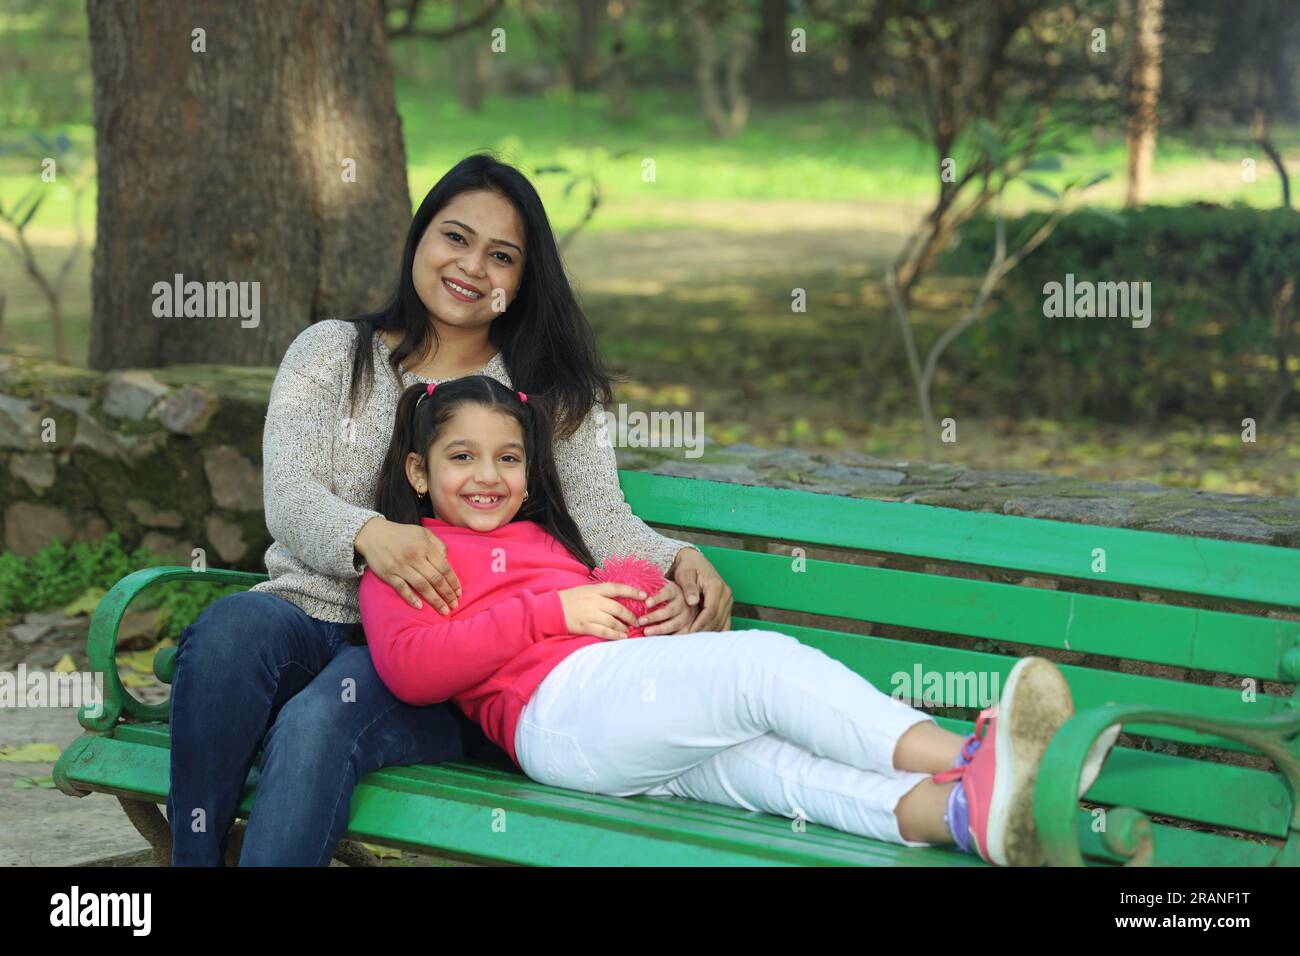 Madre e figlia che si divertono nel parco immerso nel verde e nella serenità. Stanno trascorrendo momenti felici e allegri insieme in un ambiente verde. Foto Stock